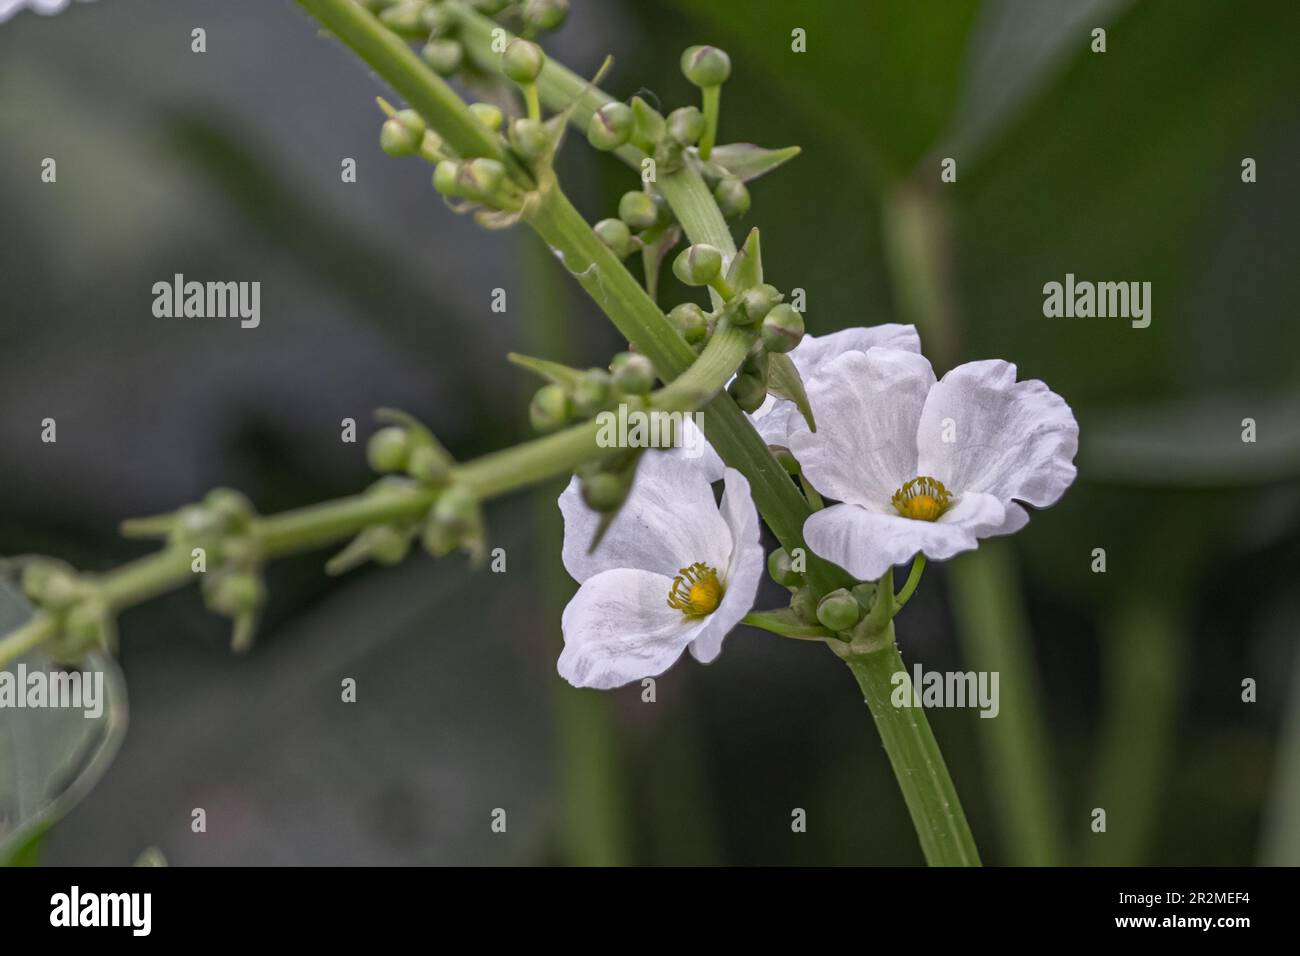 A pair of Echinodorus grandiflorus flower in lake Stock Photo